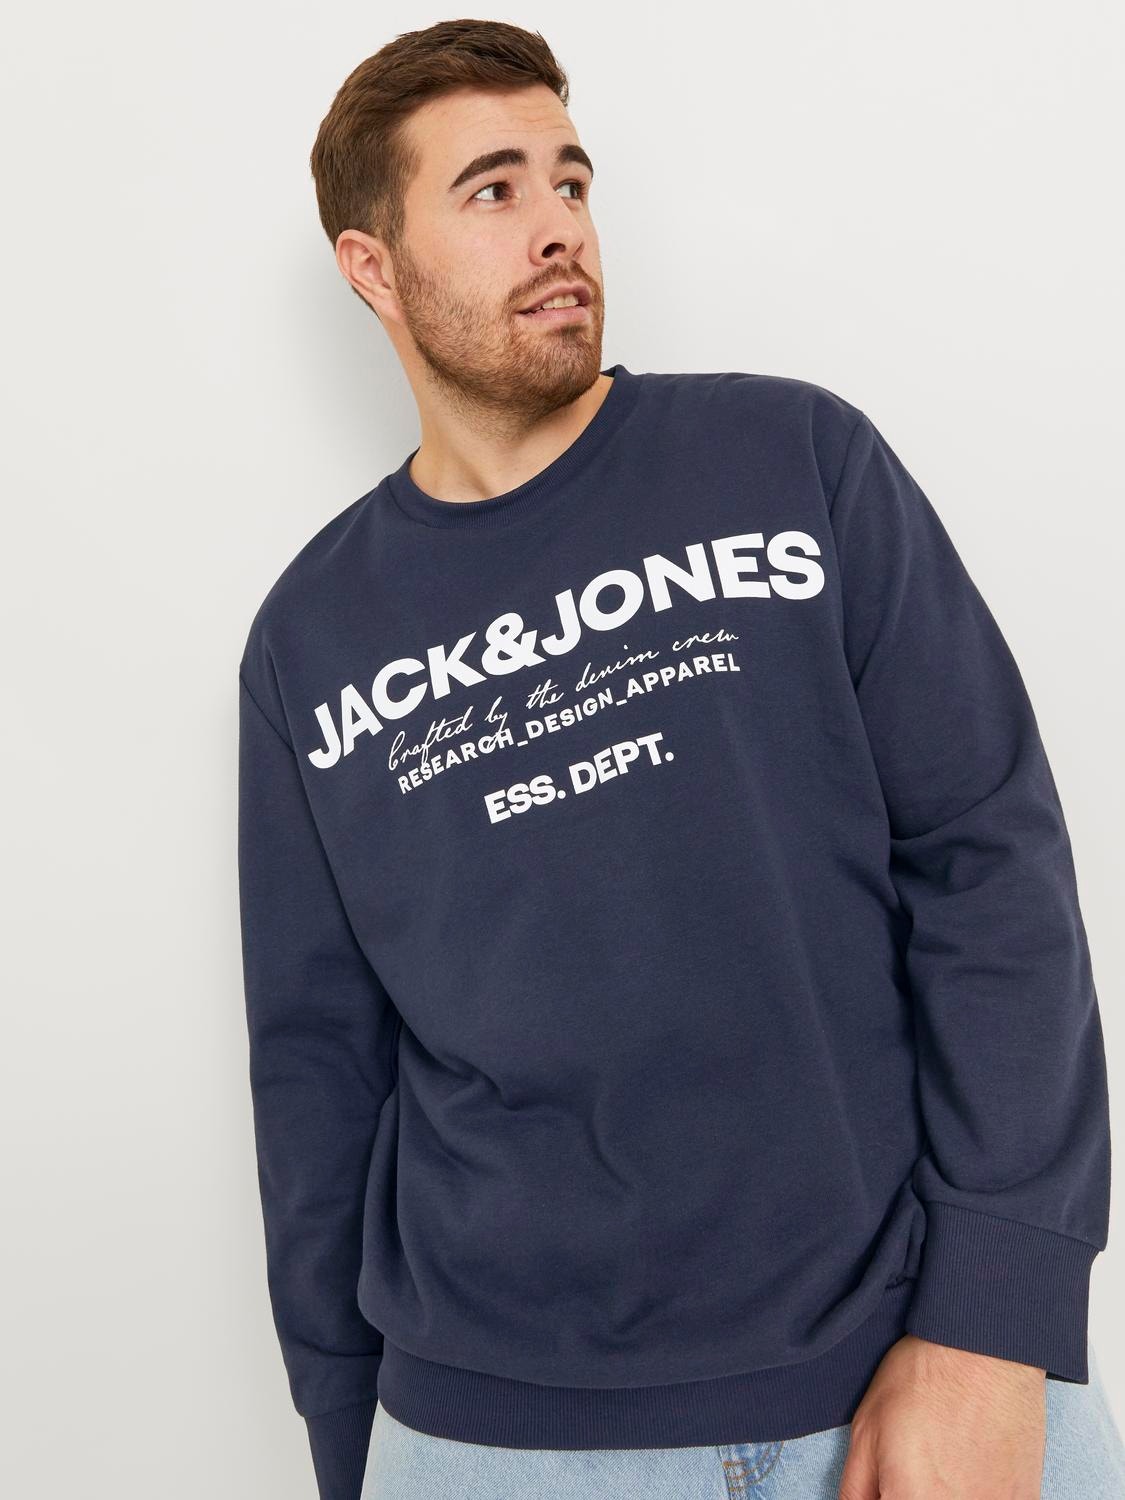 Jack & Jones Plus Size Gedruckt Sweatshirt mit Rundhals -Navy Blazer - 12251054